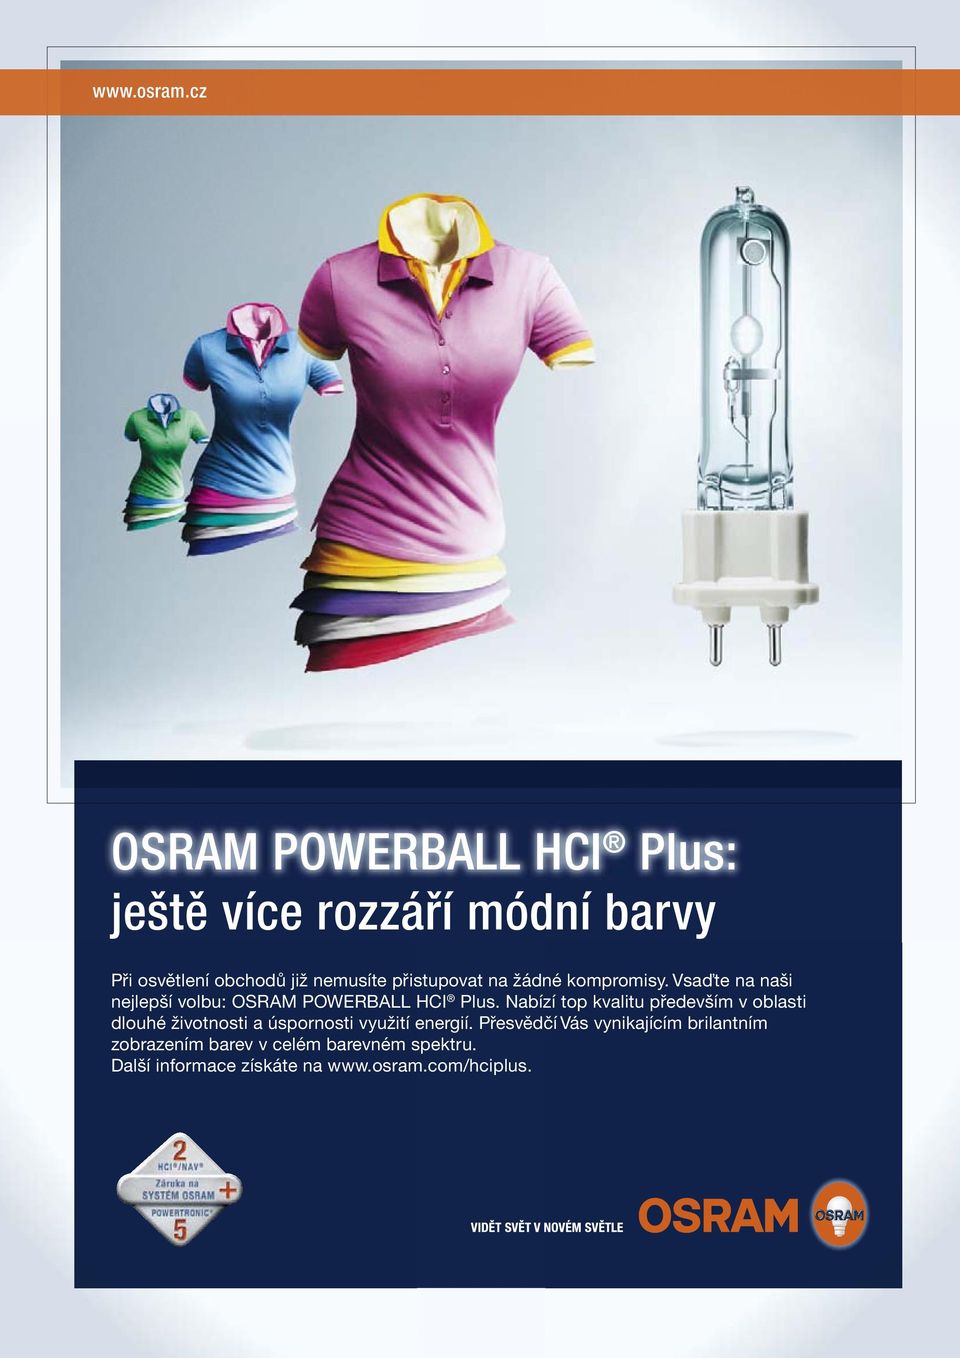 přistupovat na žádné kompromisy. Vsaďte na naši nejlepší volbu: OSRAM POWERBALL HCI Plus.